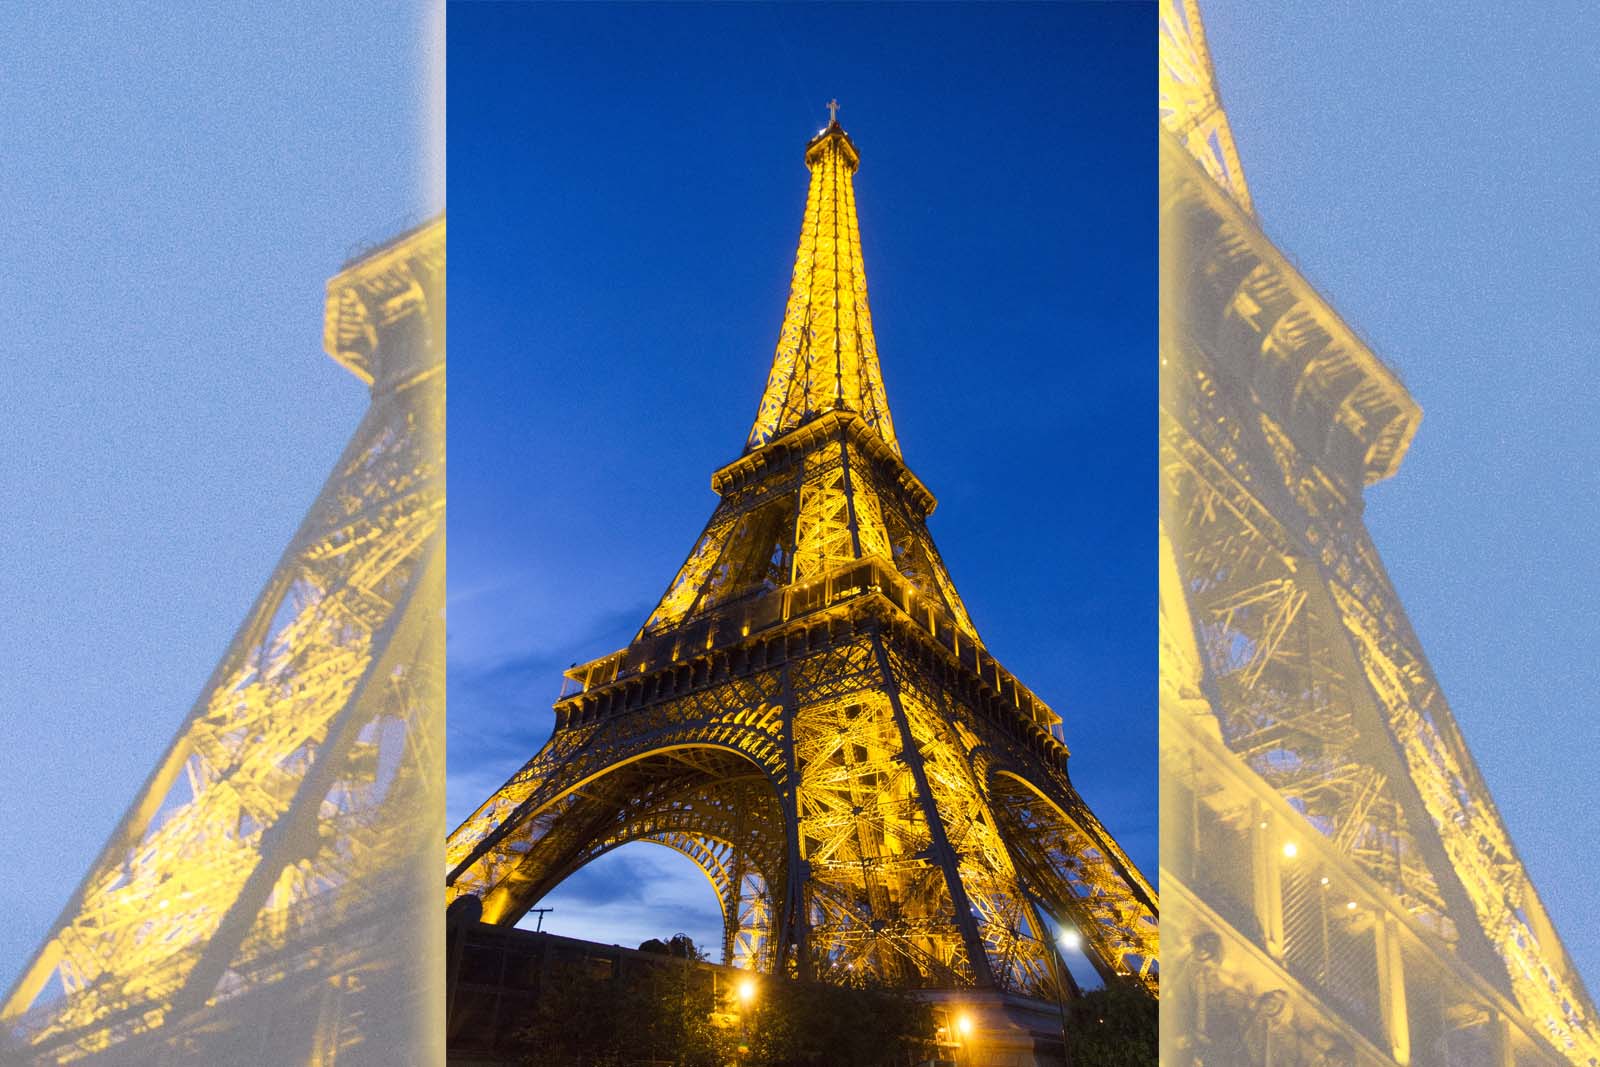 La tour Eiffel at night 2013